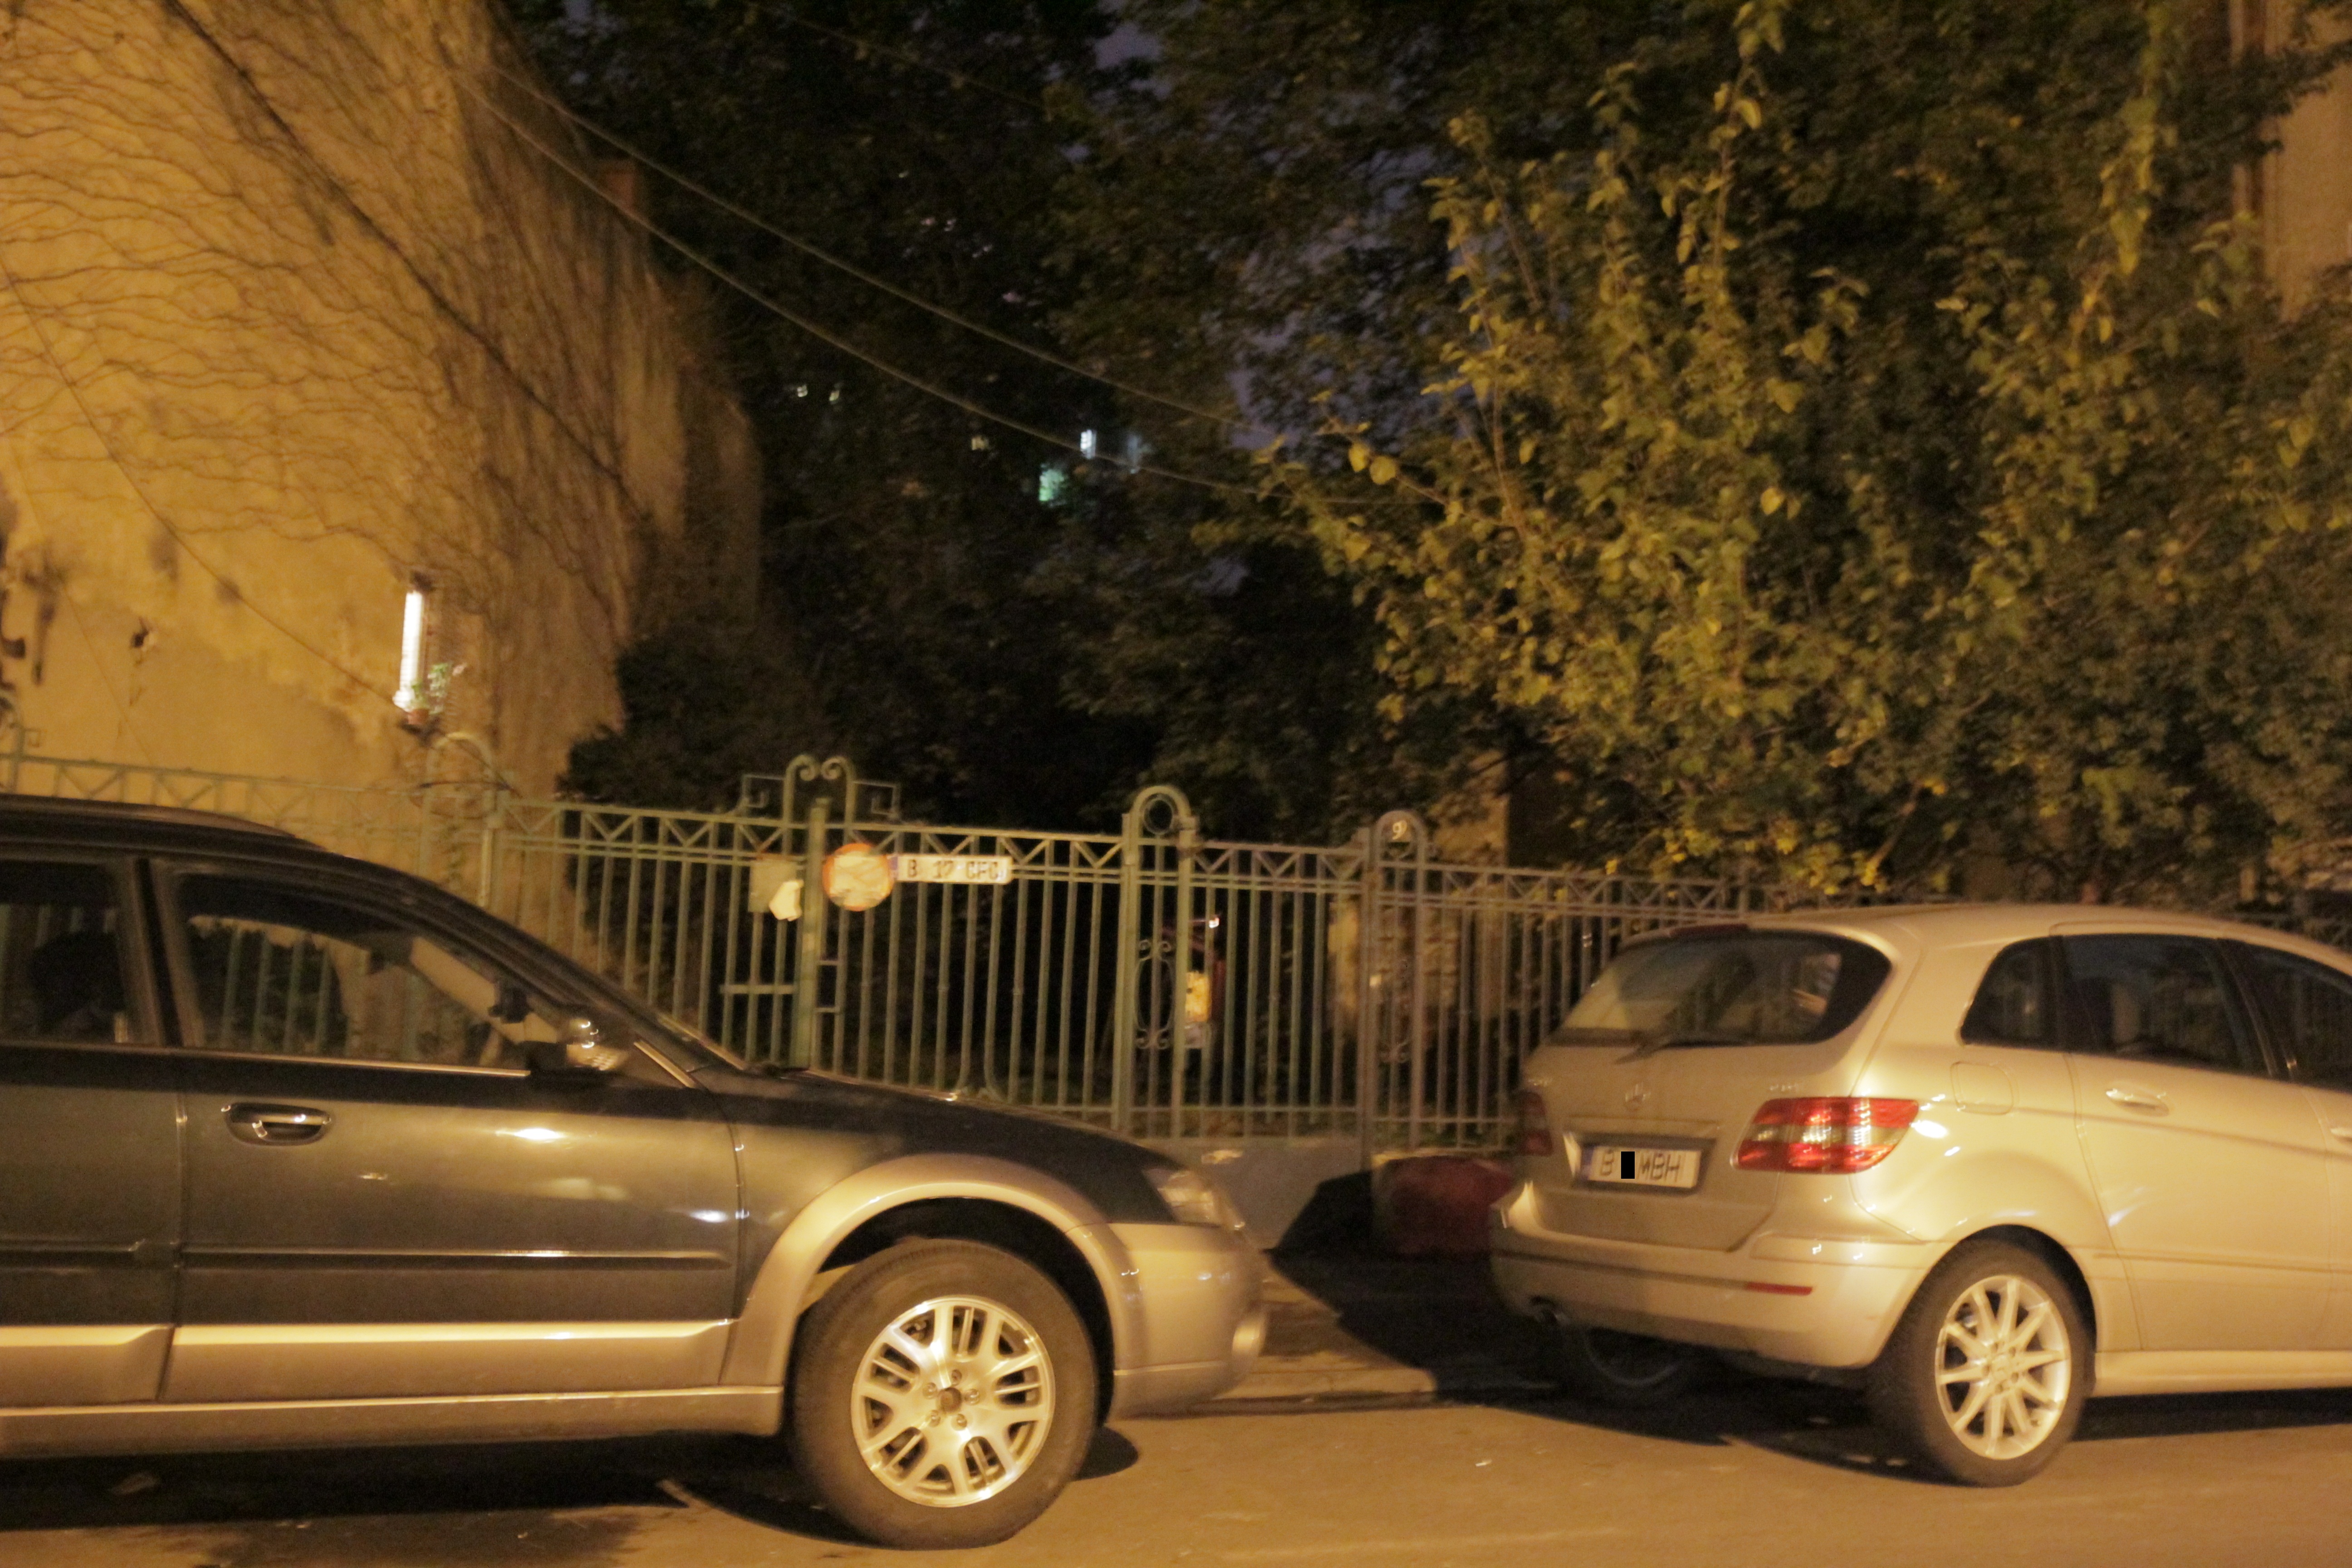 Pe proprietatea in litigiu detinuta de Mircea Lucescu nu mai locuieste nimeni